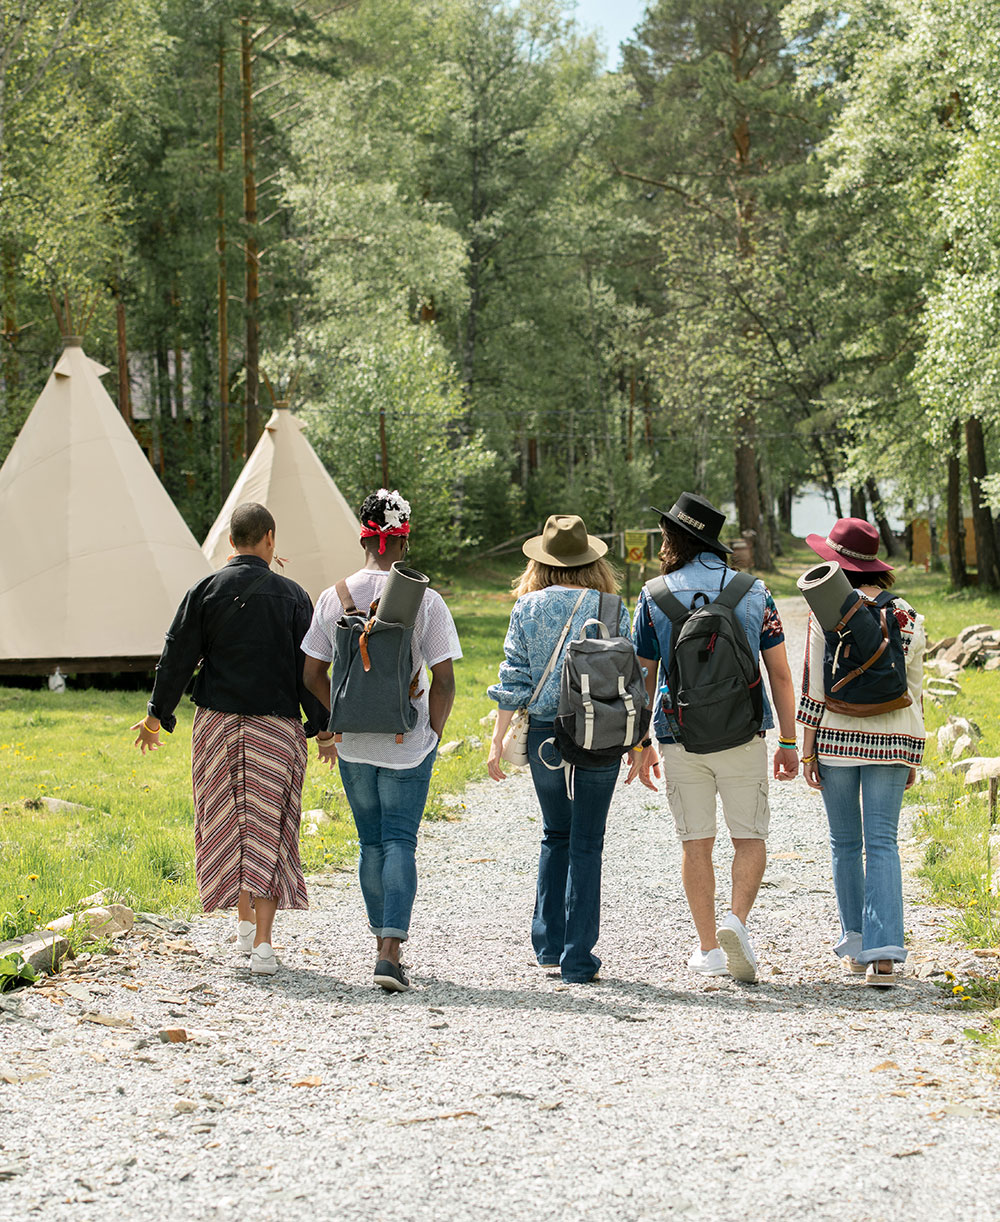 Festival campsite met vijf jongeren aan het wandelen